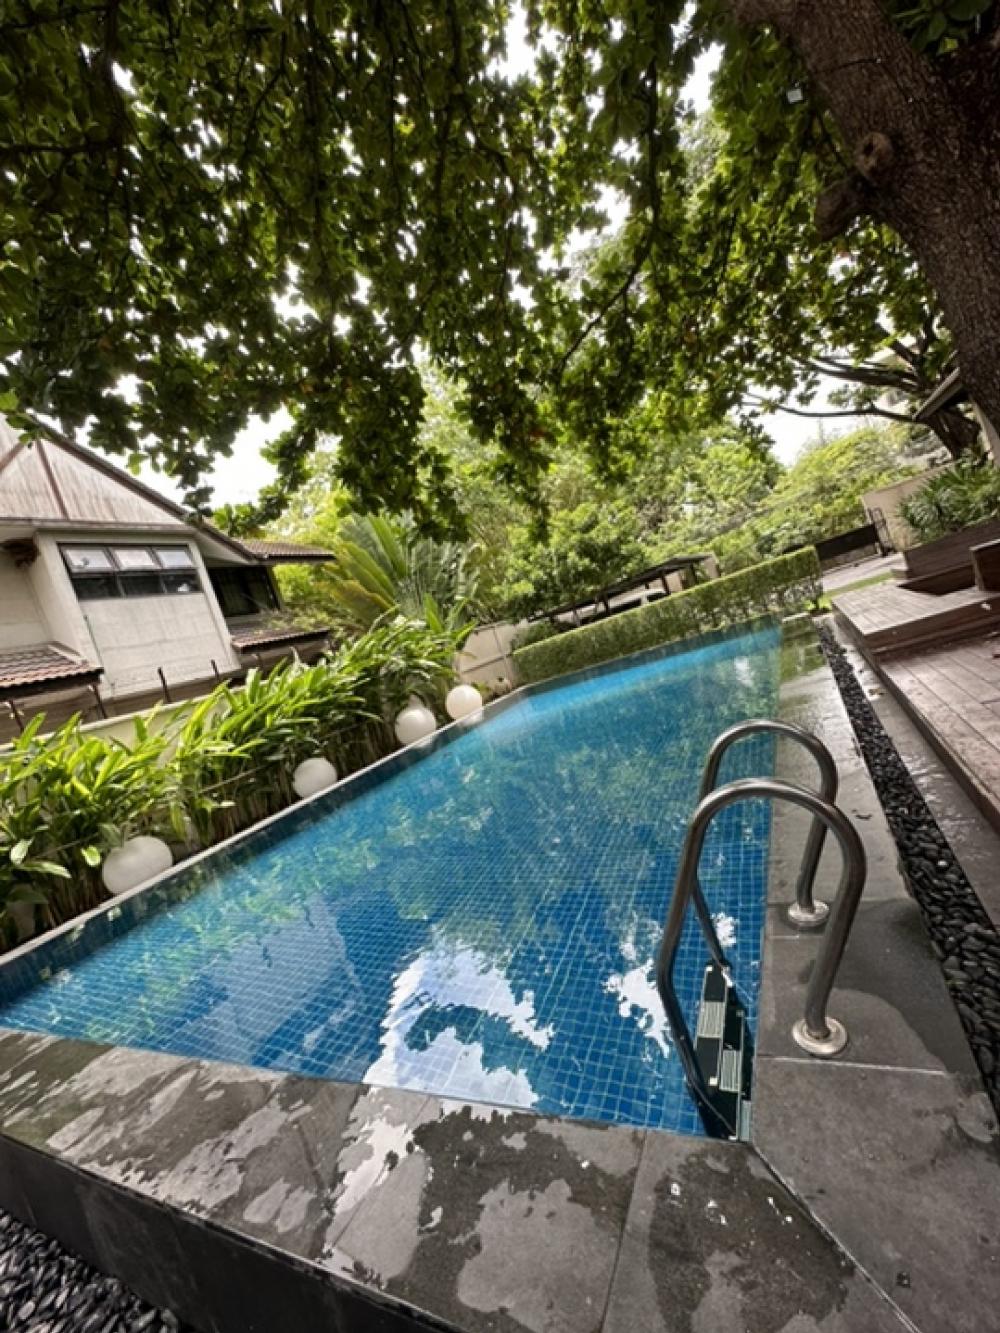 ขายบ้านสุขุมวิท อโศก ทองหล่อ : Rental/ Selling : Villa House In Thonglor with Private Pool , 5 Beds 5 baths ,163 sqw, 459 sqm ,Parking 4+4  🔥🔥 Rental : 550,000 THB / Month🔥🔥  🔥🔥 Selling : 220,000,000 THB 🔥🔥  #Houserental #Fullfurnished #Electr